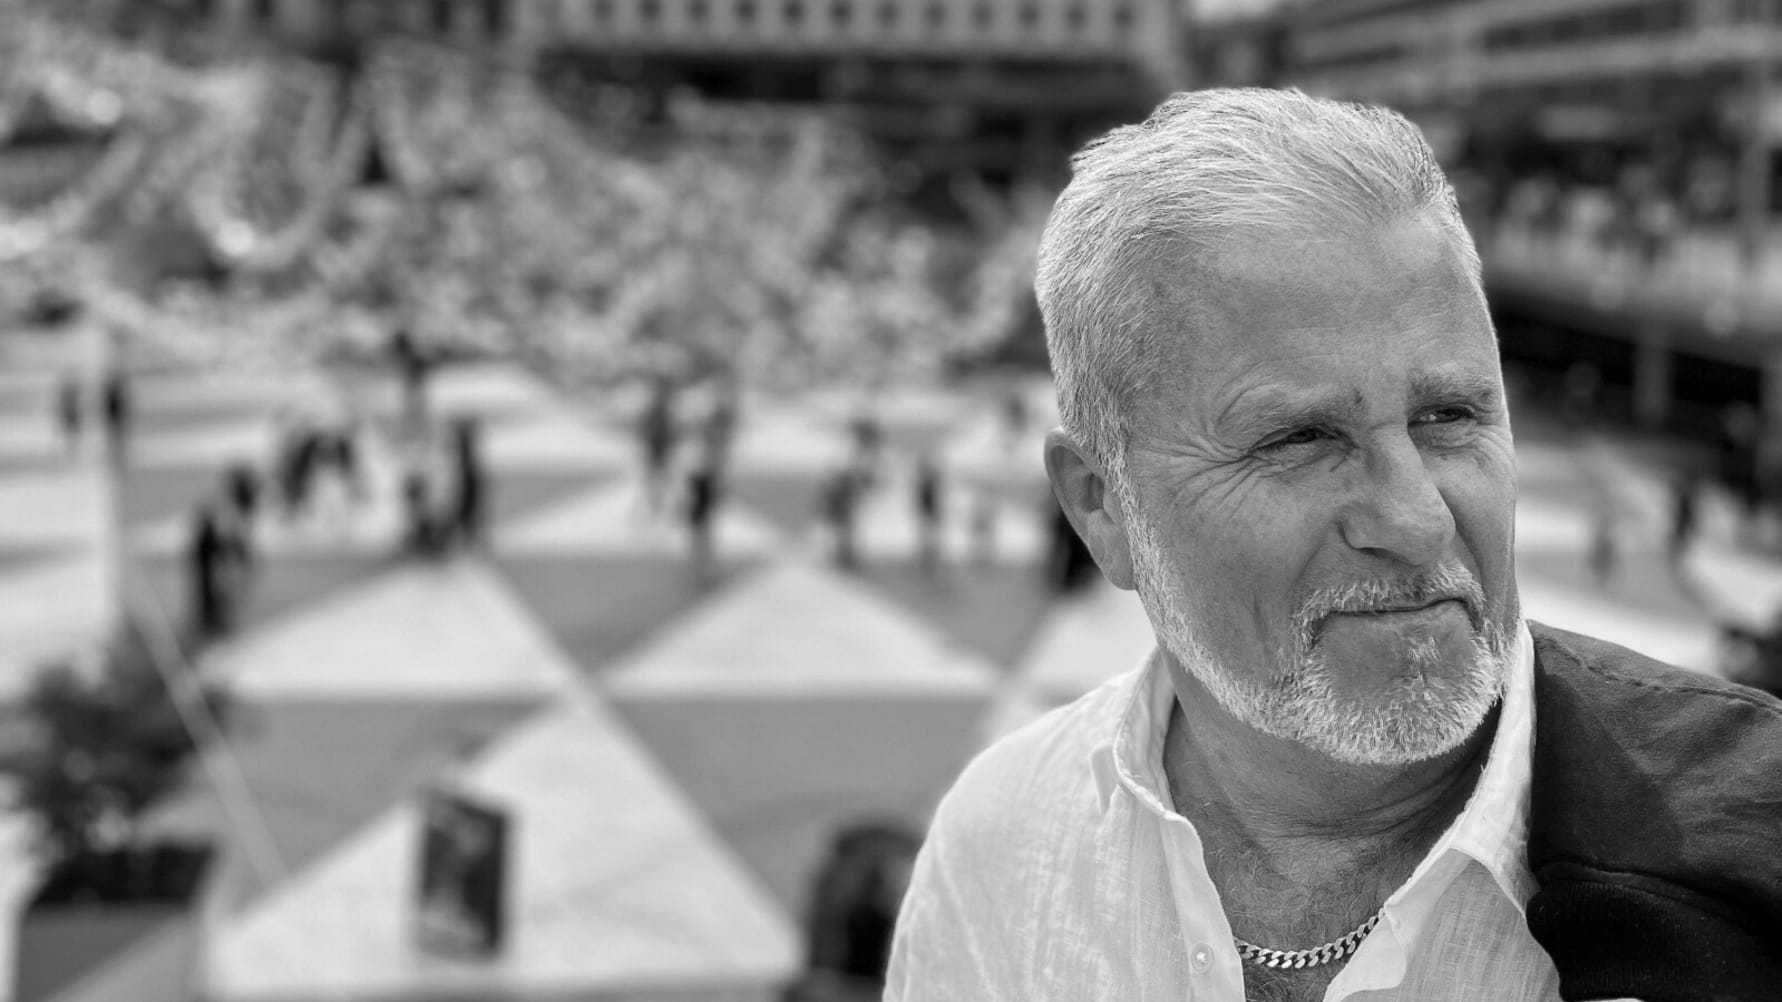 NY SINGEL. Jan Johansen släpper “Stockholm” - en kärlekssång till hemstaden